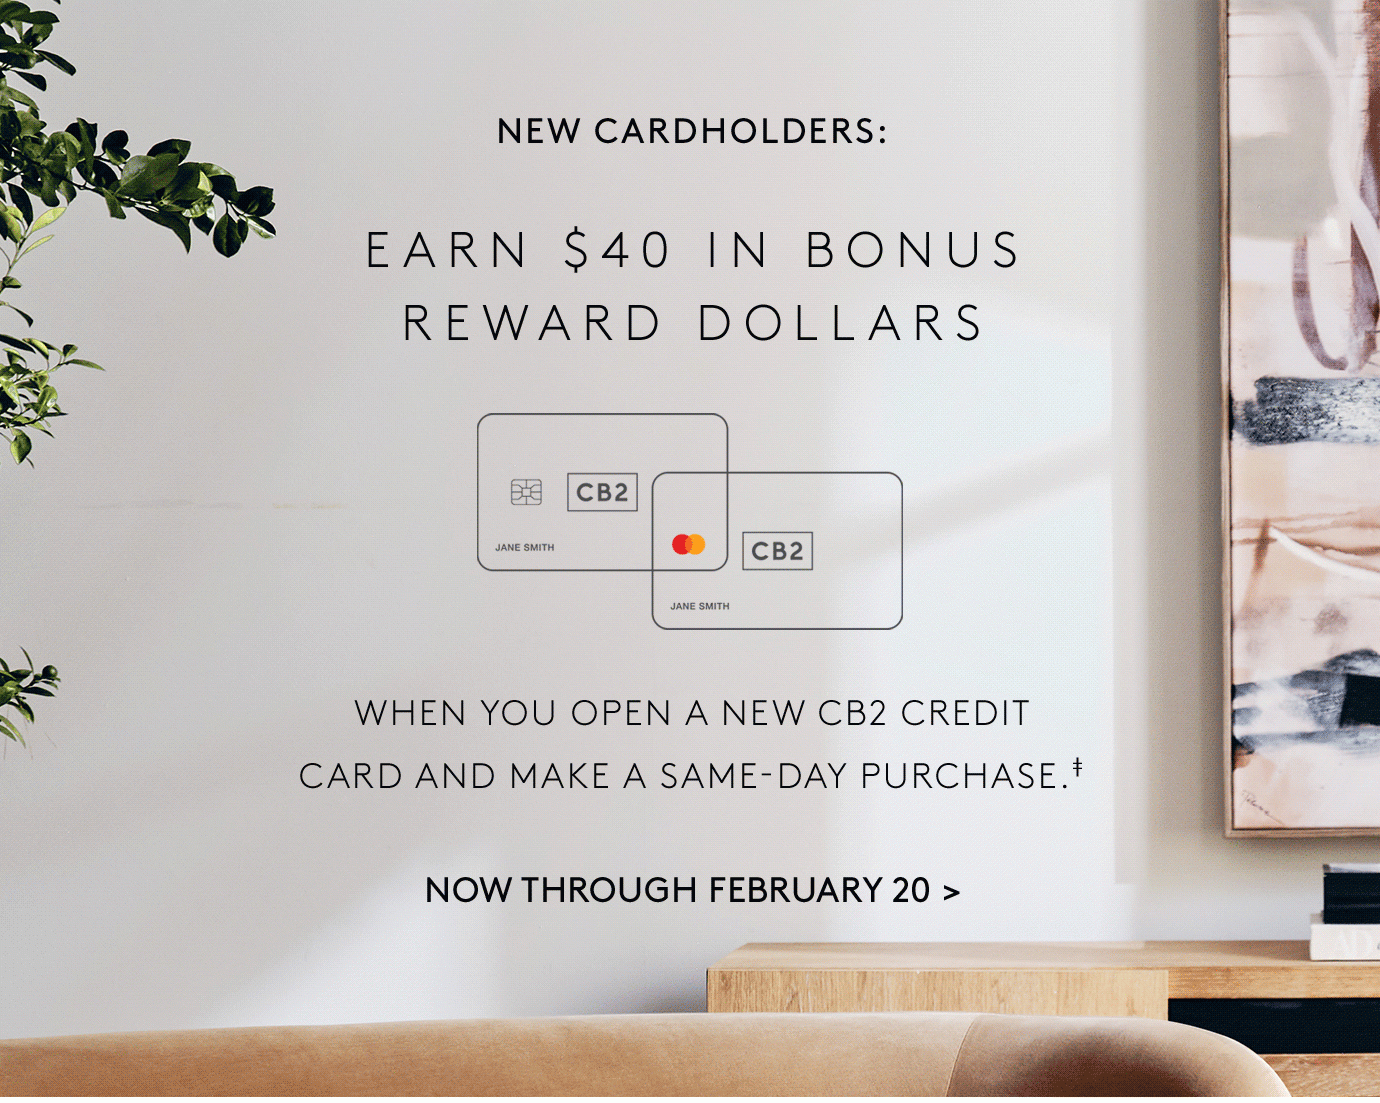 Earn $40 in bonus reward dollars